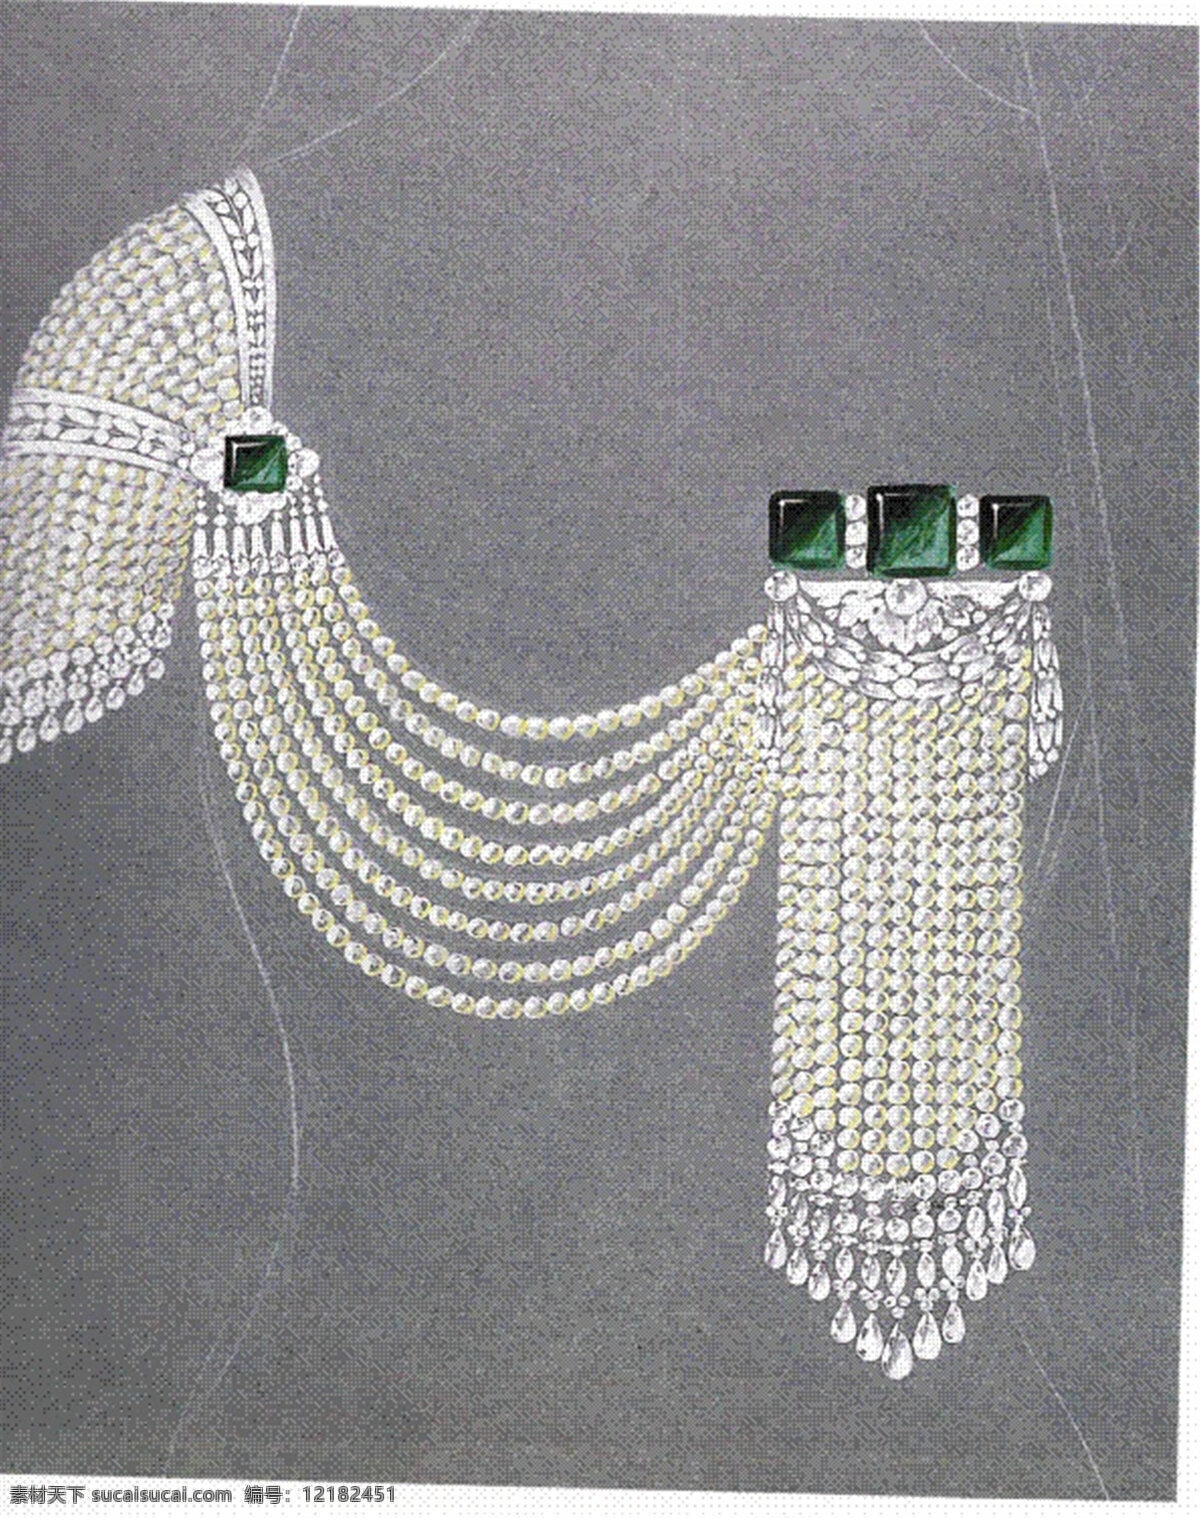 时尚 美丽 项链 手绘 珠宝 创意 潮流 新颖 灰色